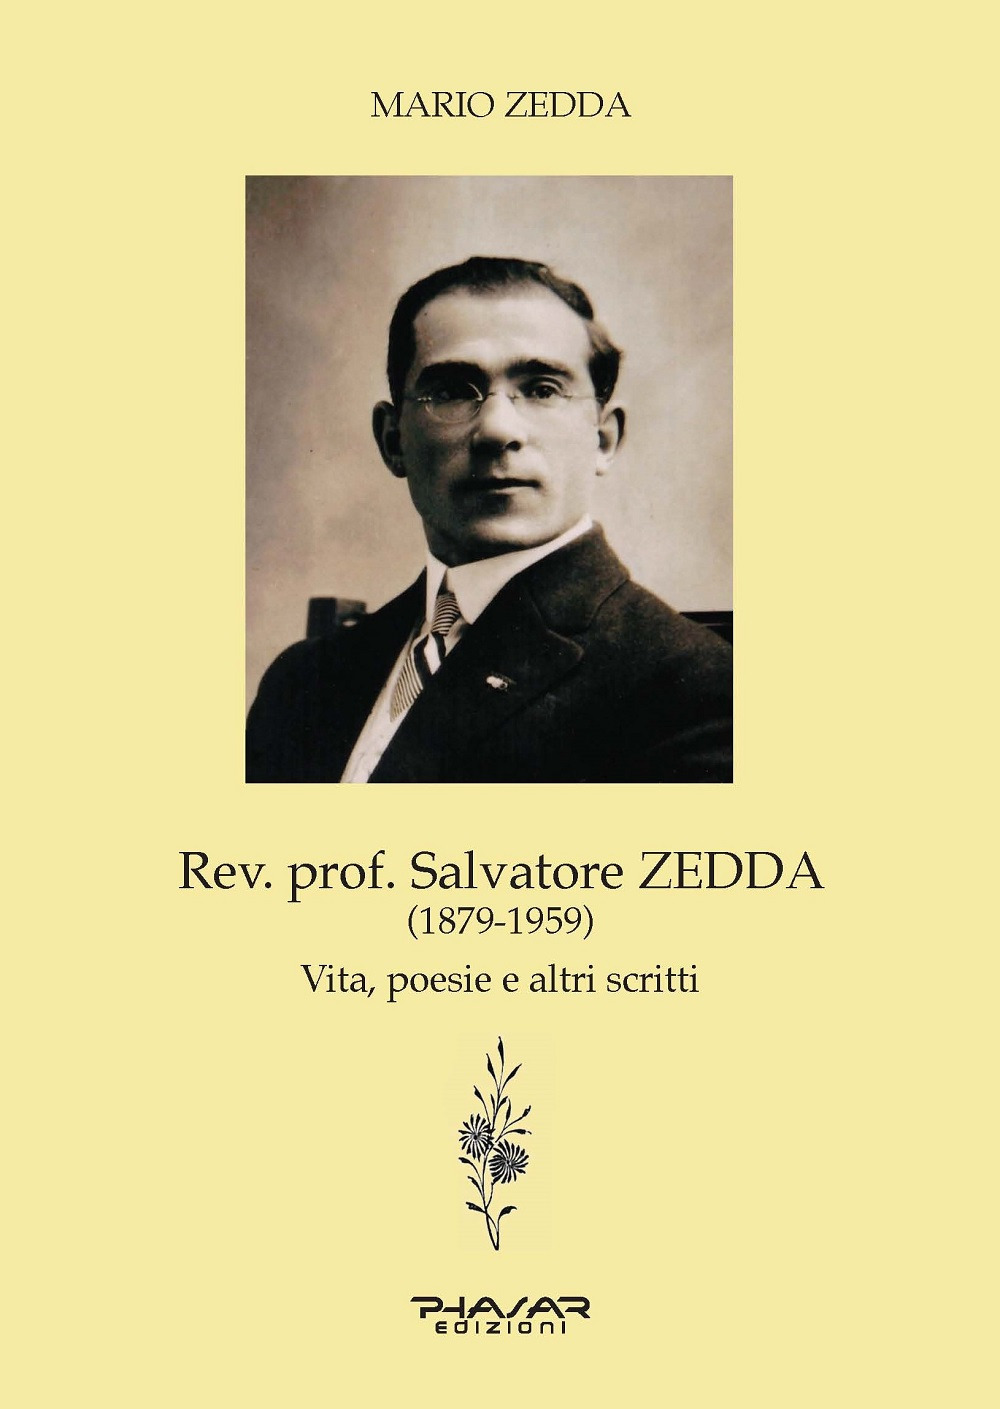 Rev. prof. Salvatore Zedda (1879-1959). Vita, poesie e altri scritti